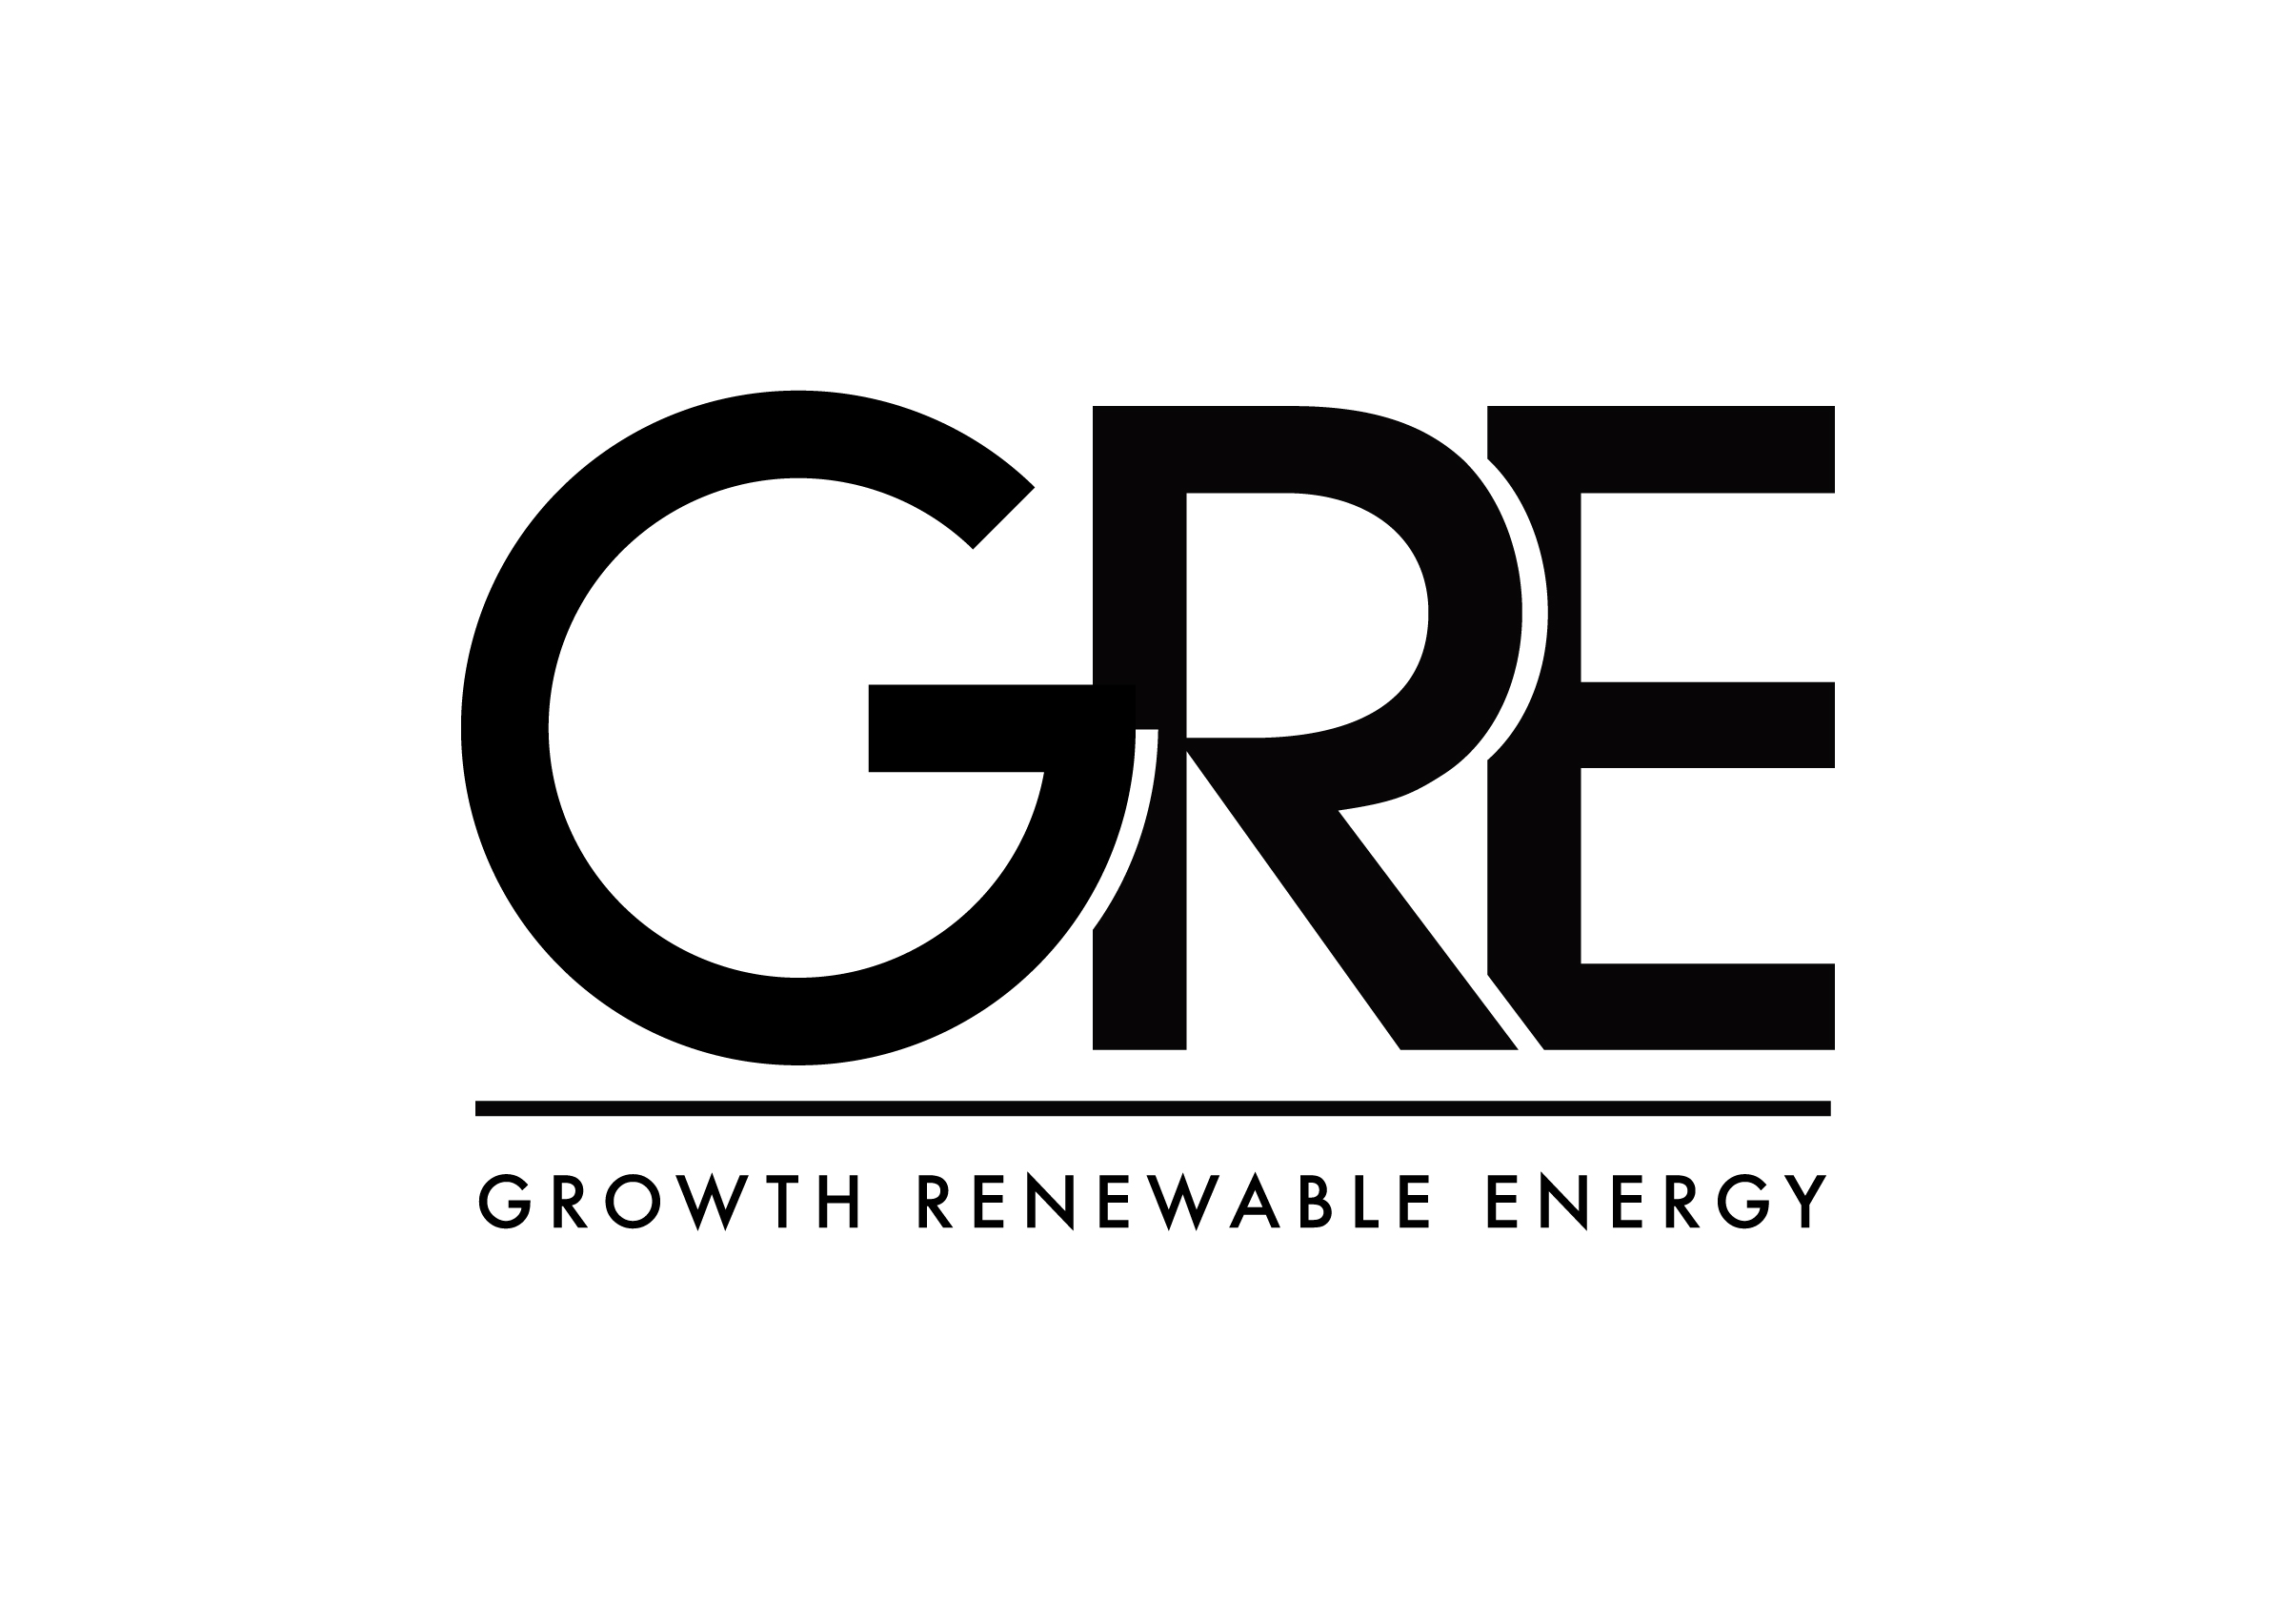 Growth Renewable Energy